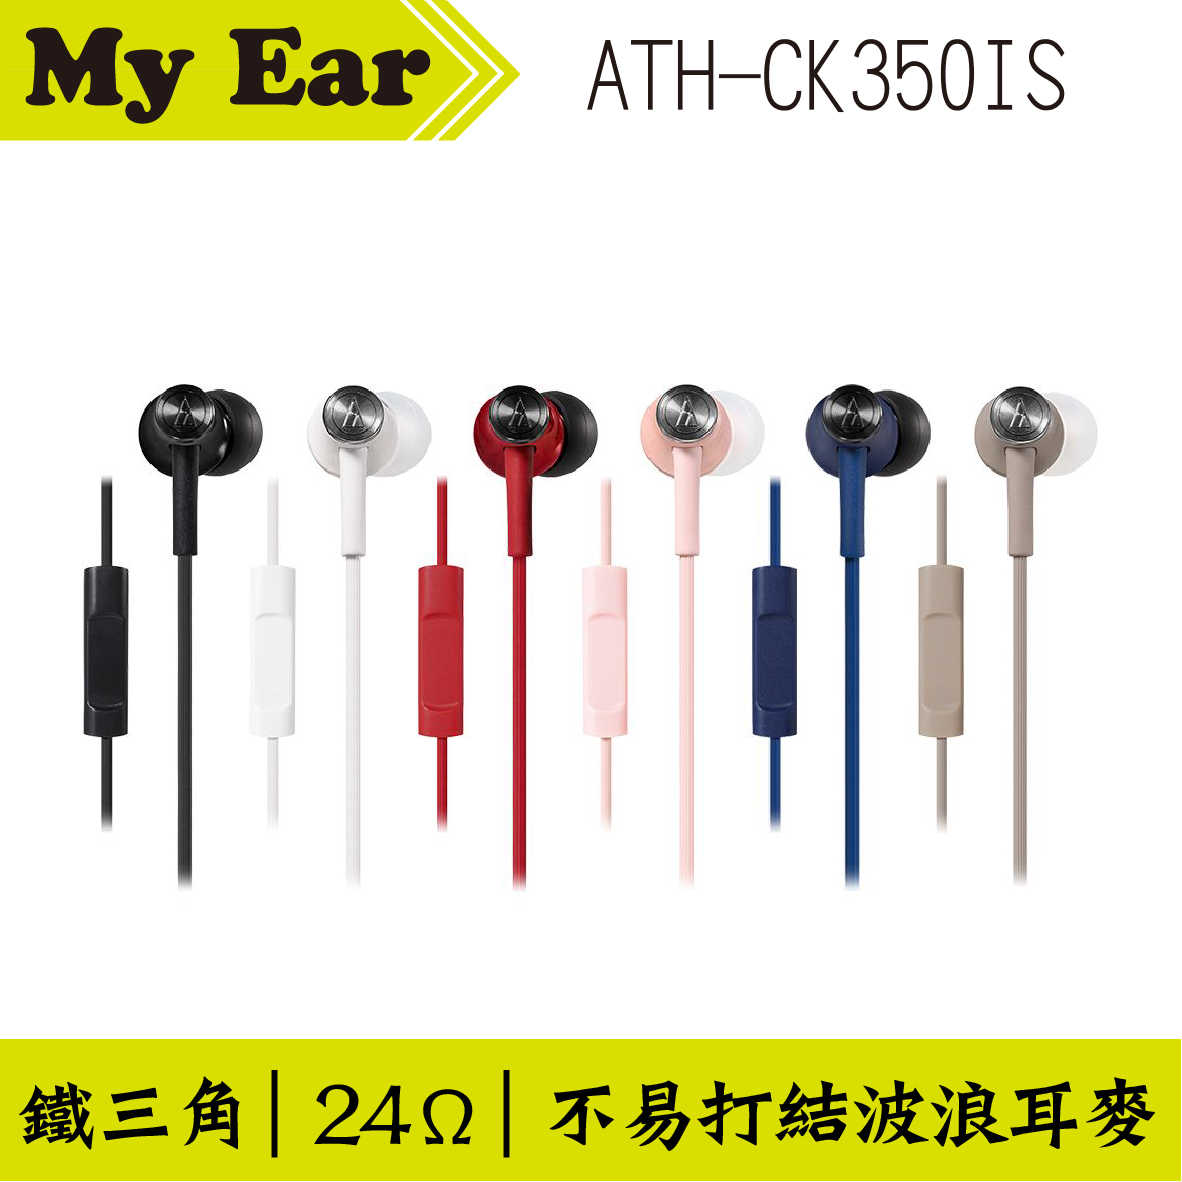 鐵三角 ATH-CK350IS 耳機麥克風 藍色  | My Ear 耳機專門店